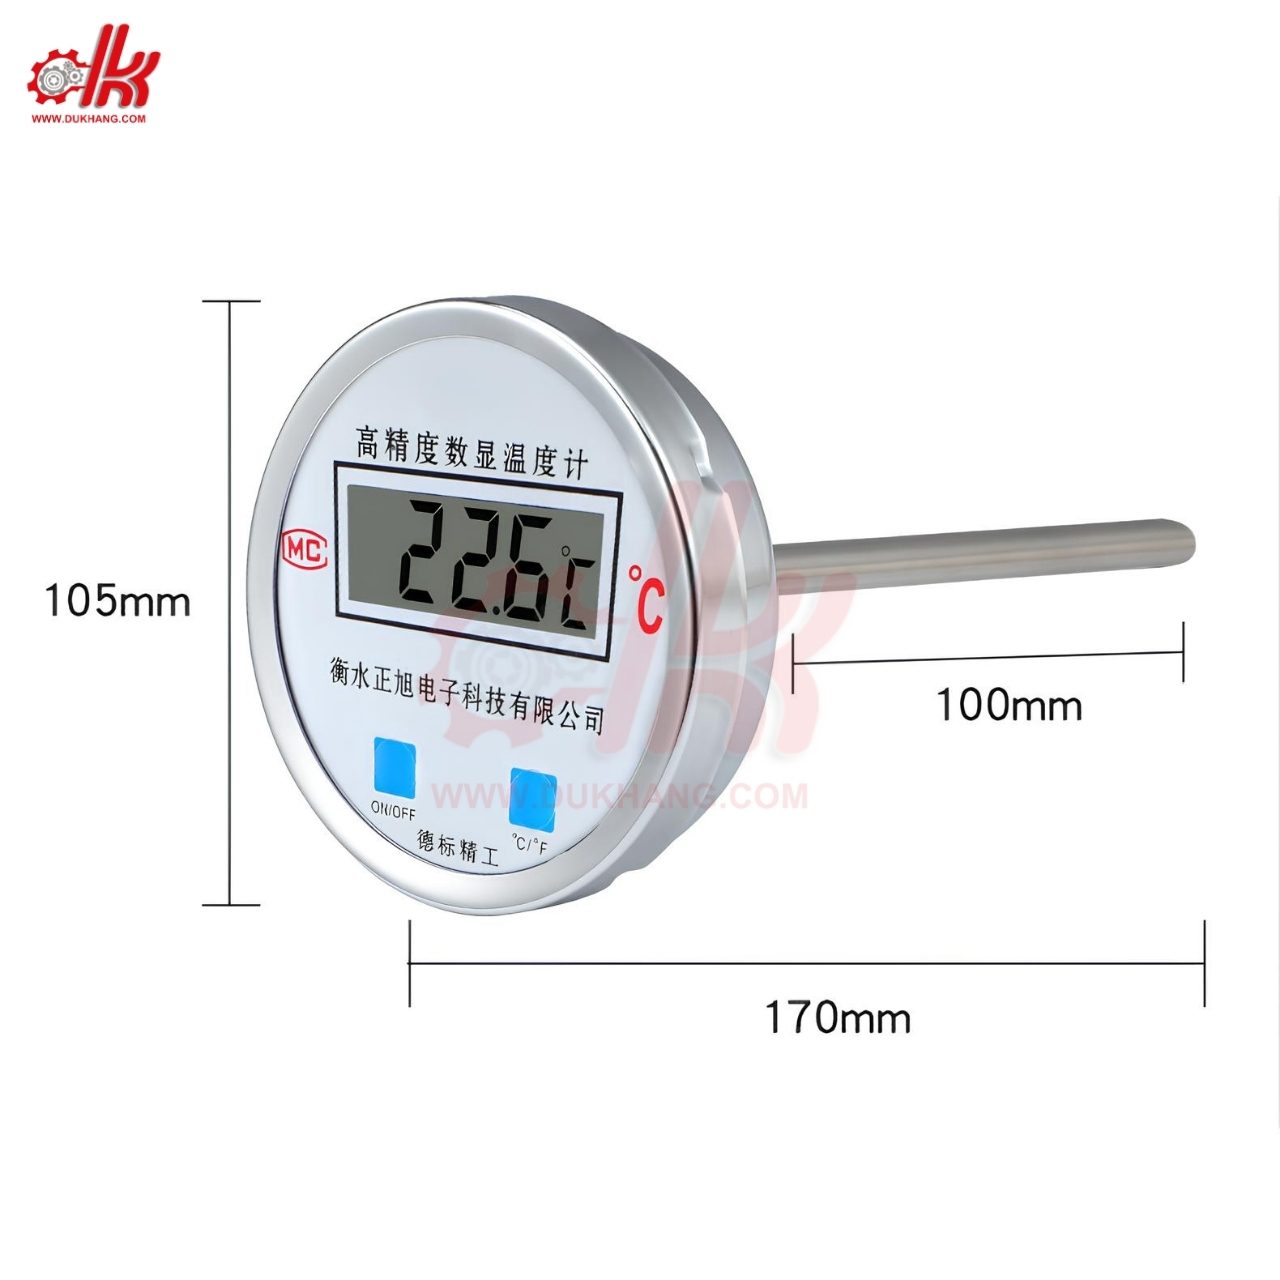 đồng hồ đo nhiệt độ điện tử